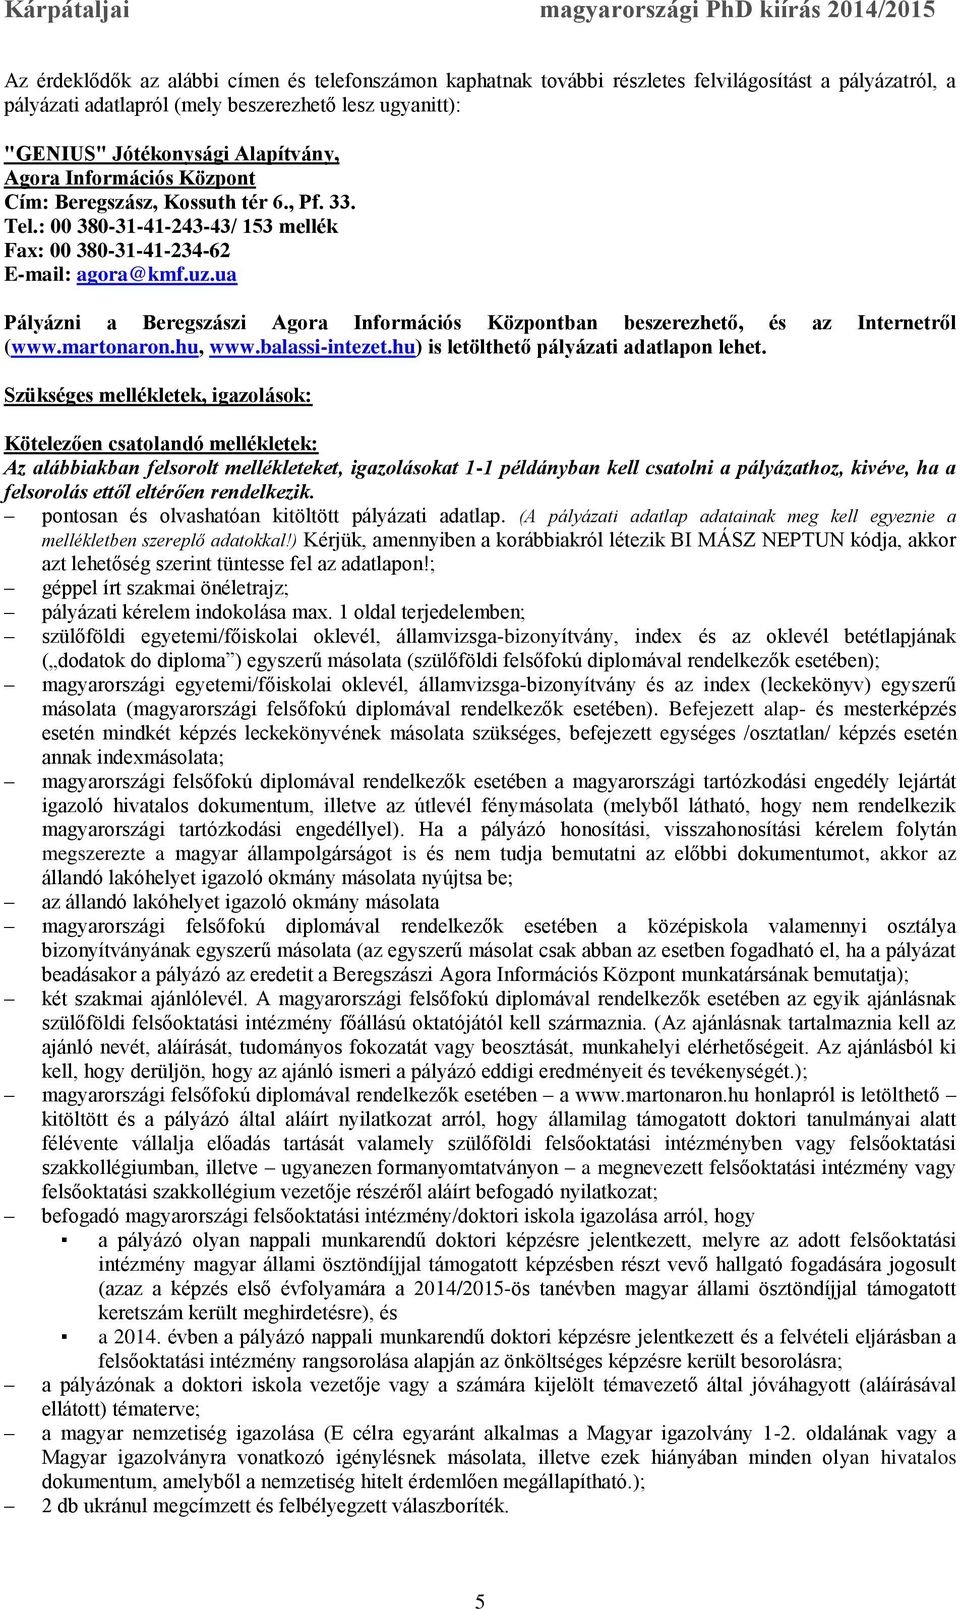 ua Pályázni a Beregszászi Agora Információs Központban beszerezhető, és az Internetről (www.martonaron.hu, www.balassi-intezet.hu) is letölthető pályázati adatlapon lehet.